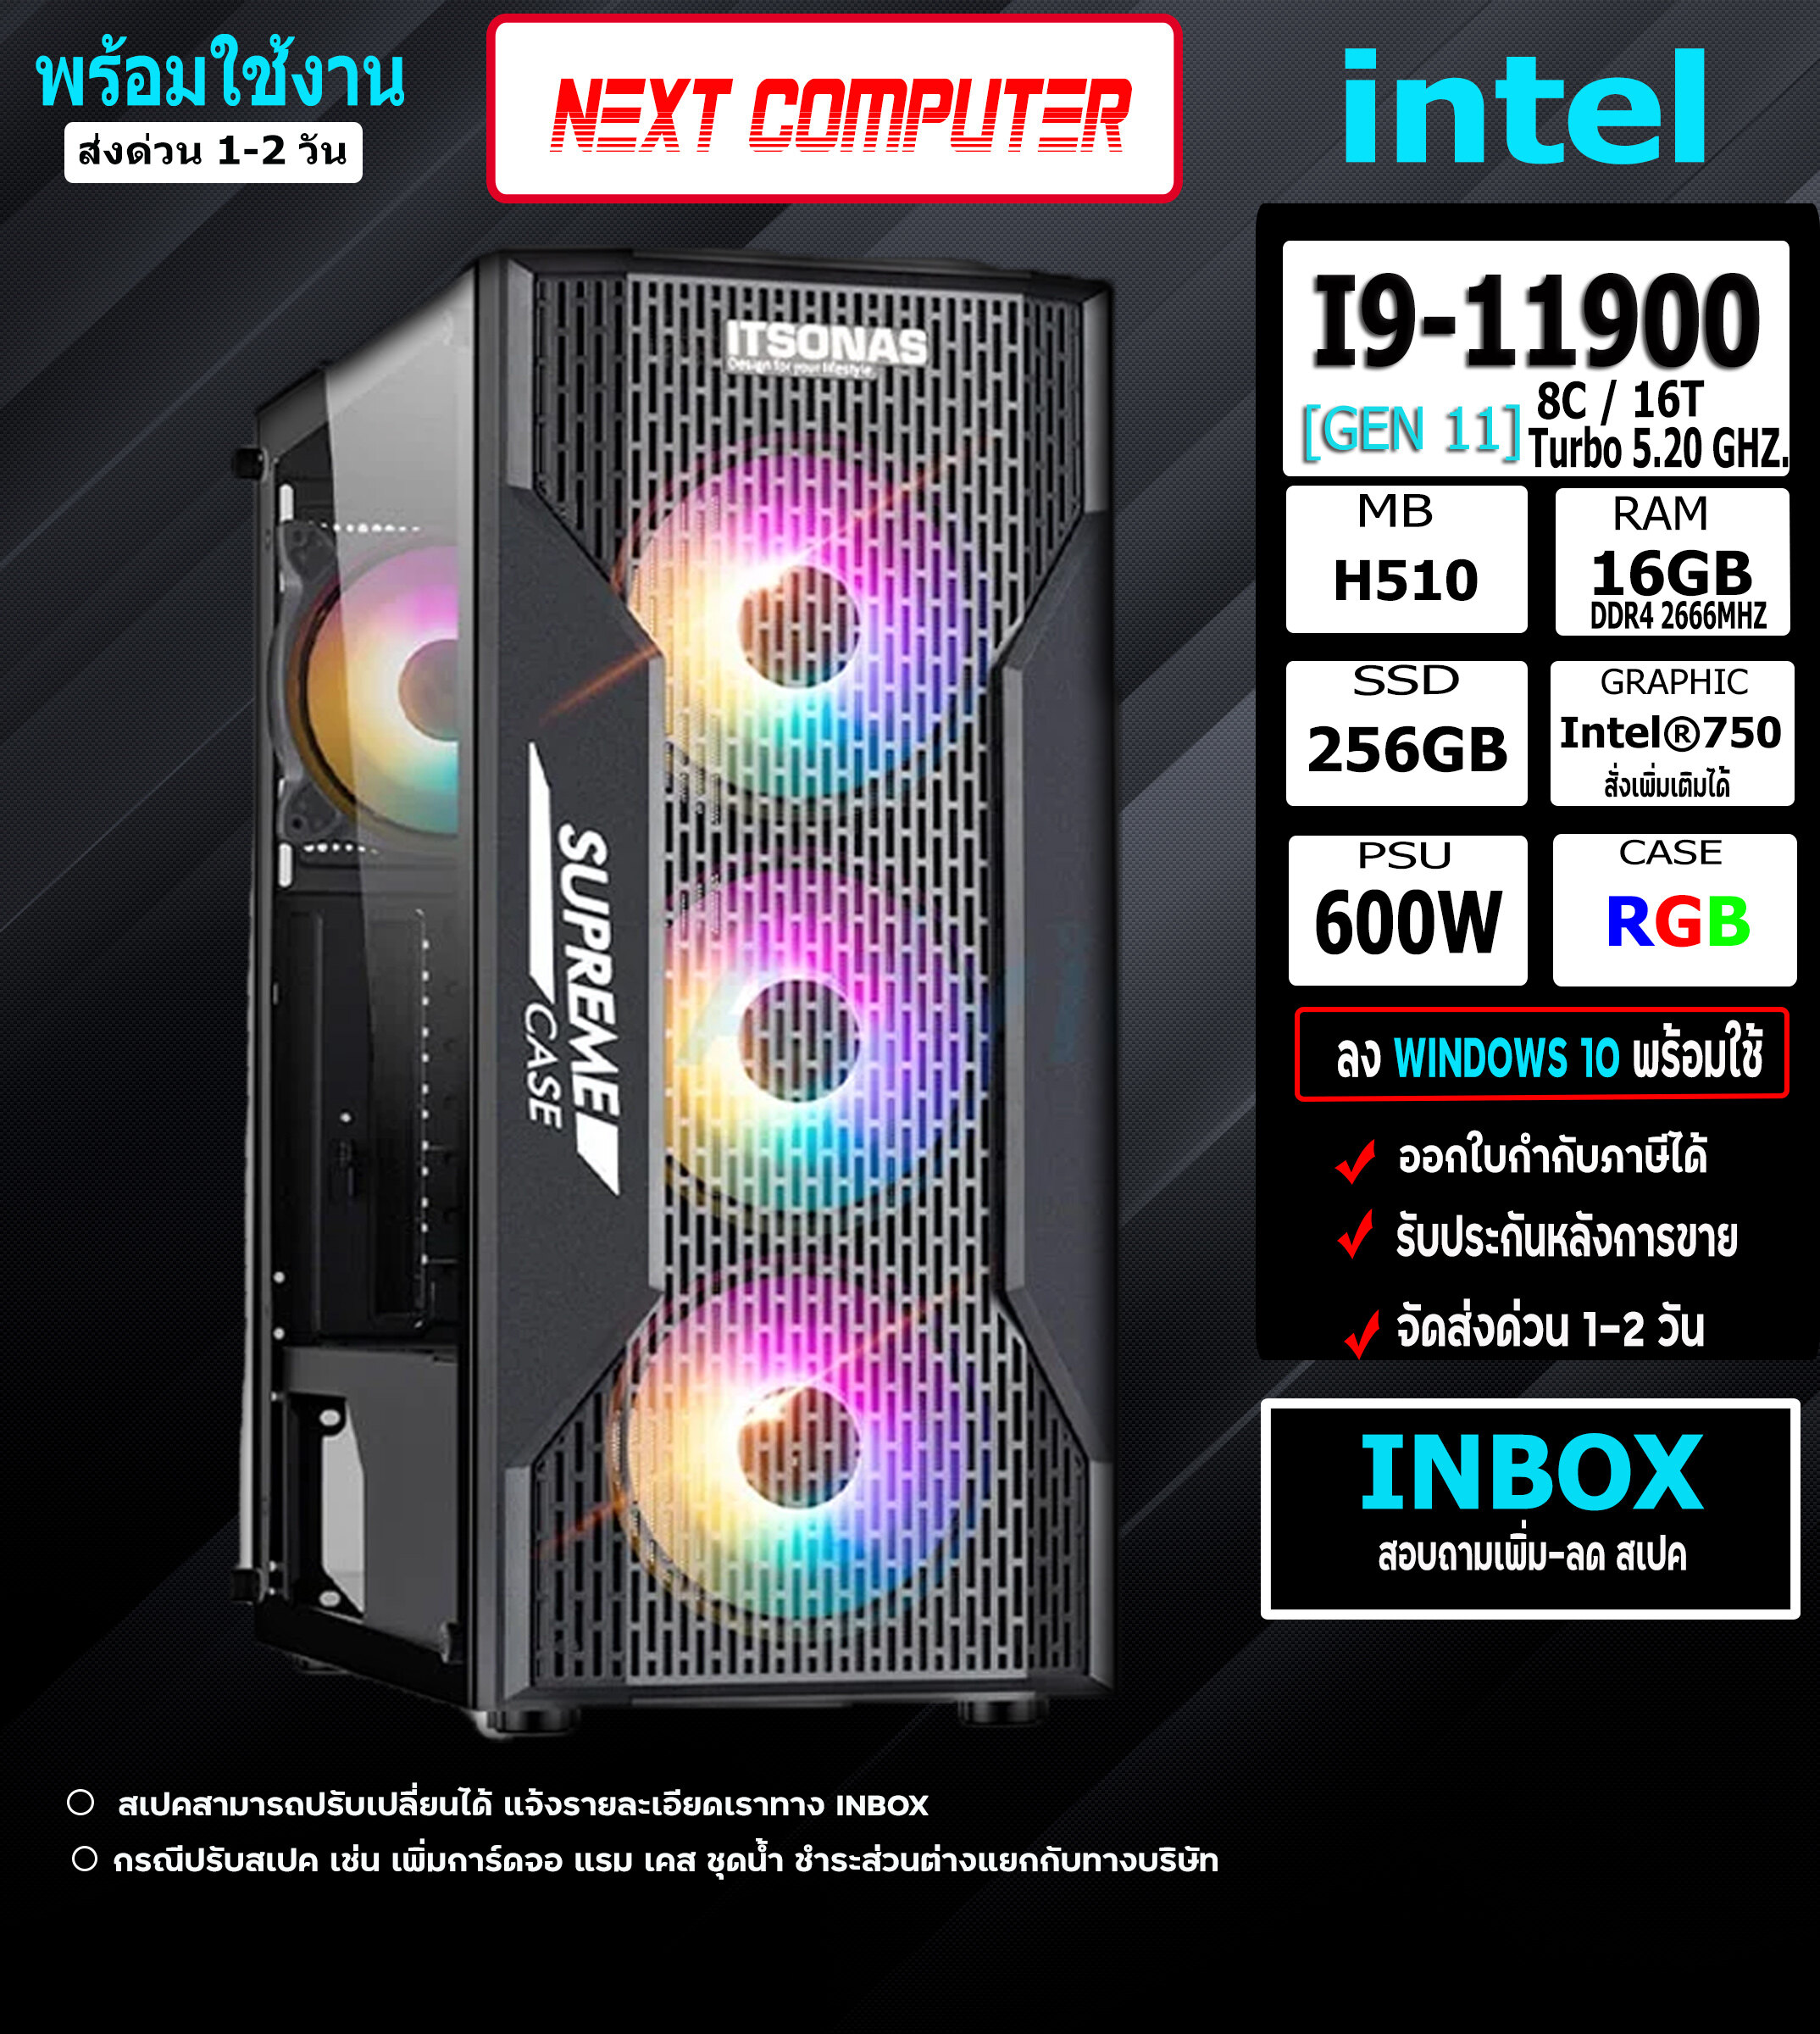 NEW2021 INTEL I9-11900 [GEN11] I RAM 16GB I SSD 256GB I PSU600W